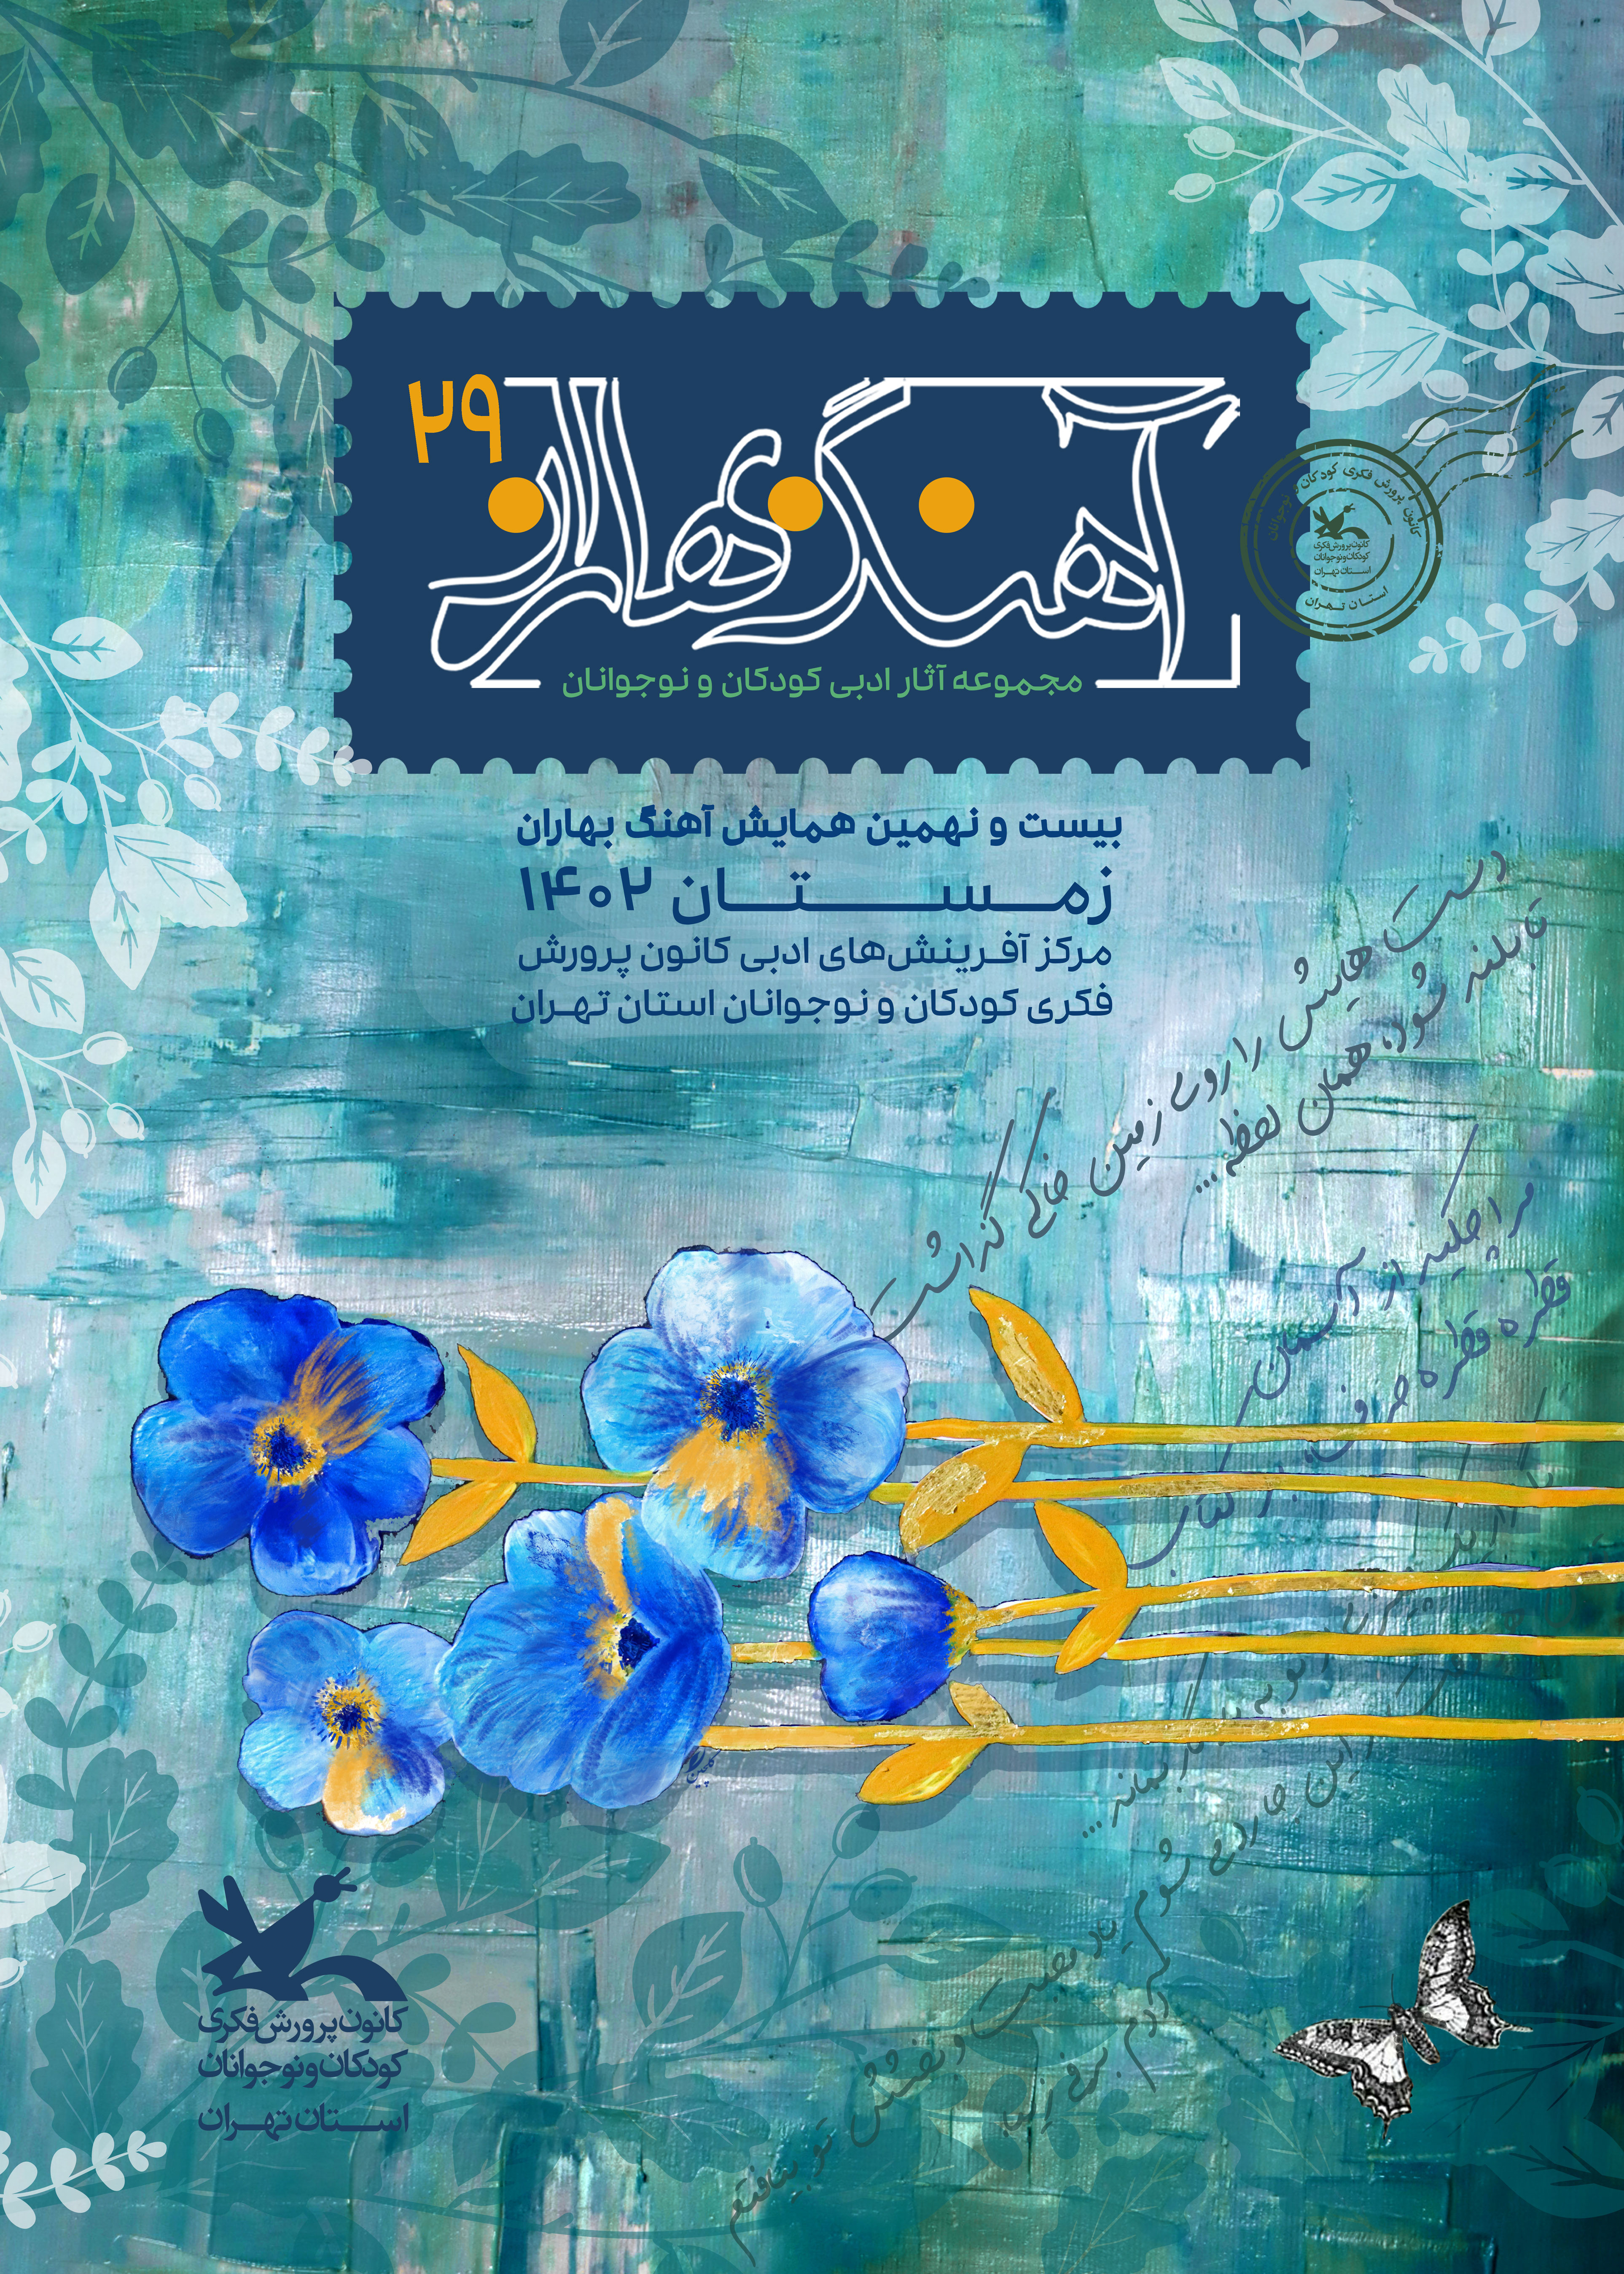 بیست و نهمین آهنگ بهاران کانون استان تهران نواحته شد.